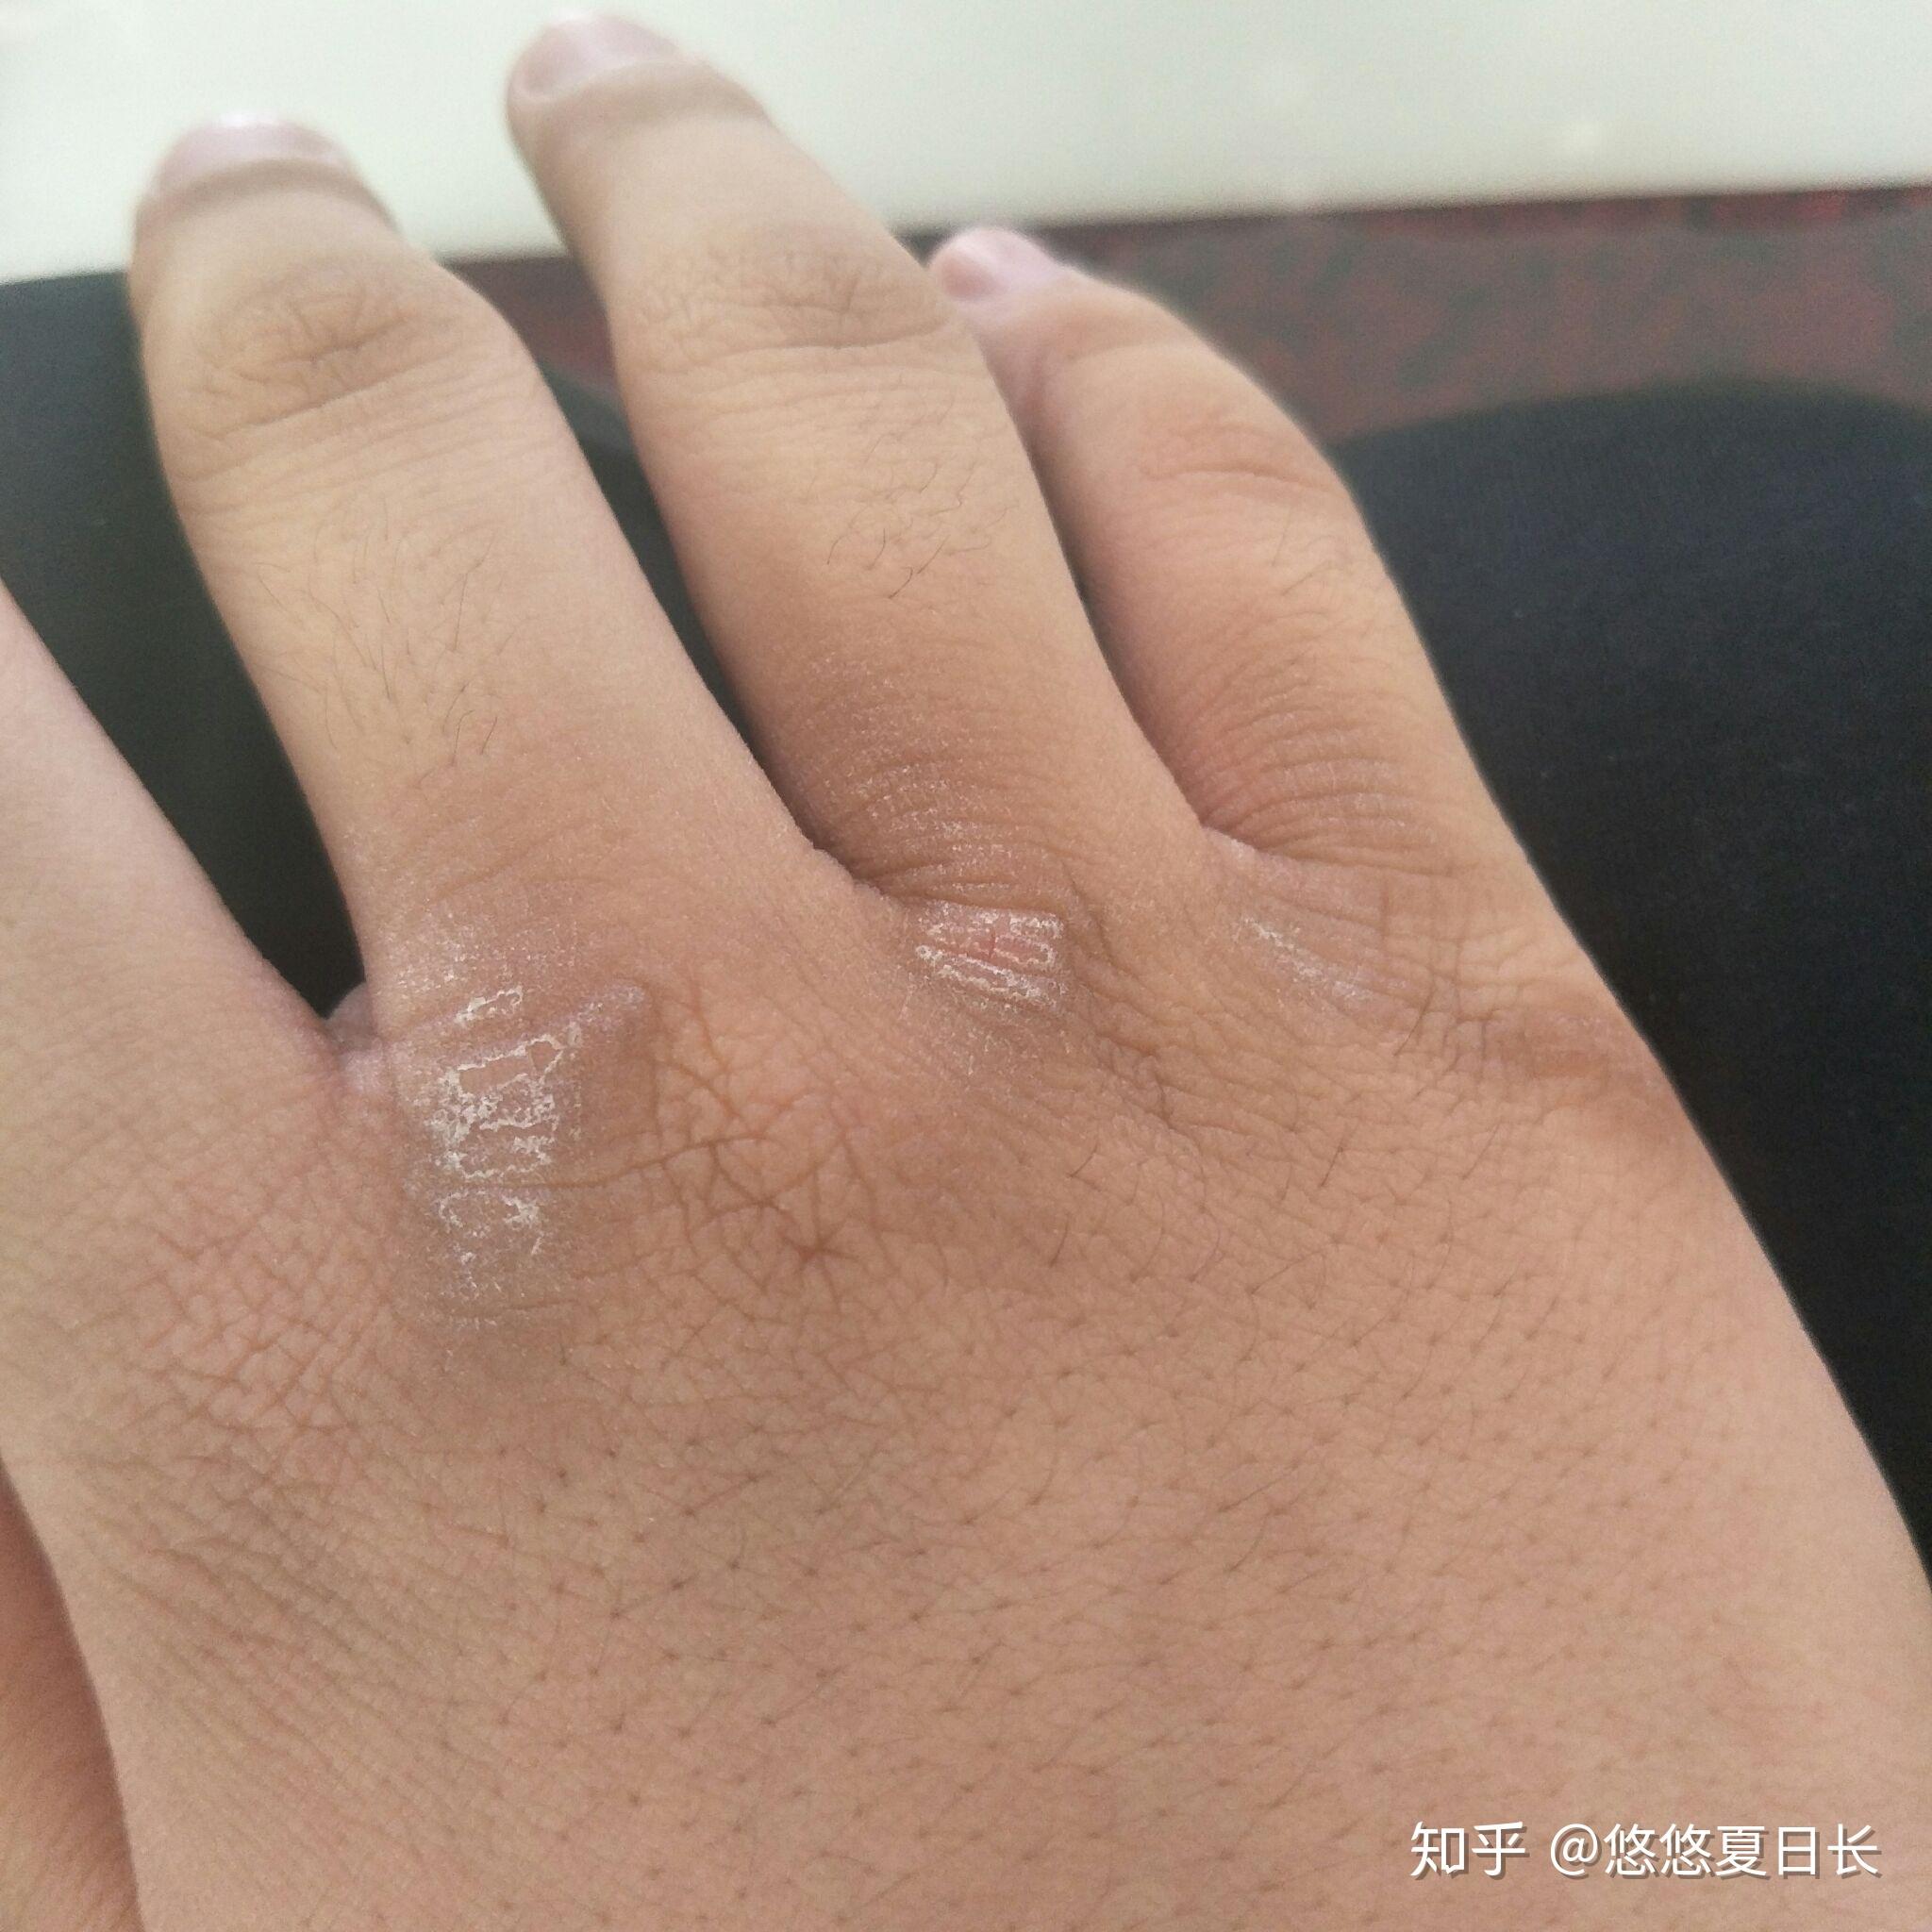 我的两个手指之间的皮肤变黑变硬怎么办? 